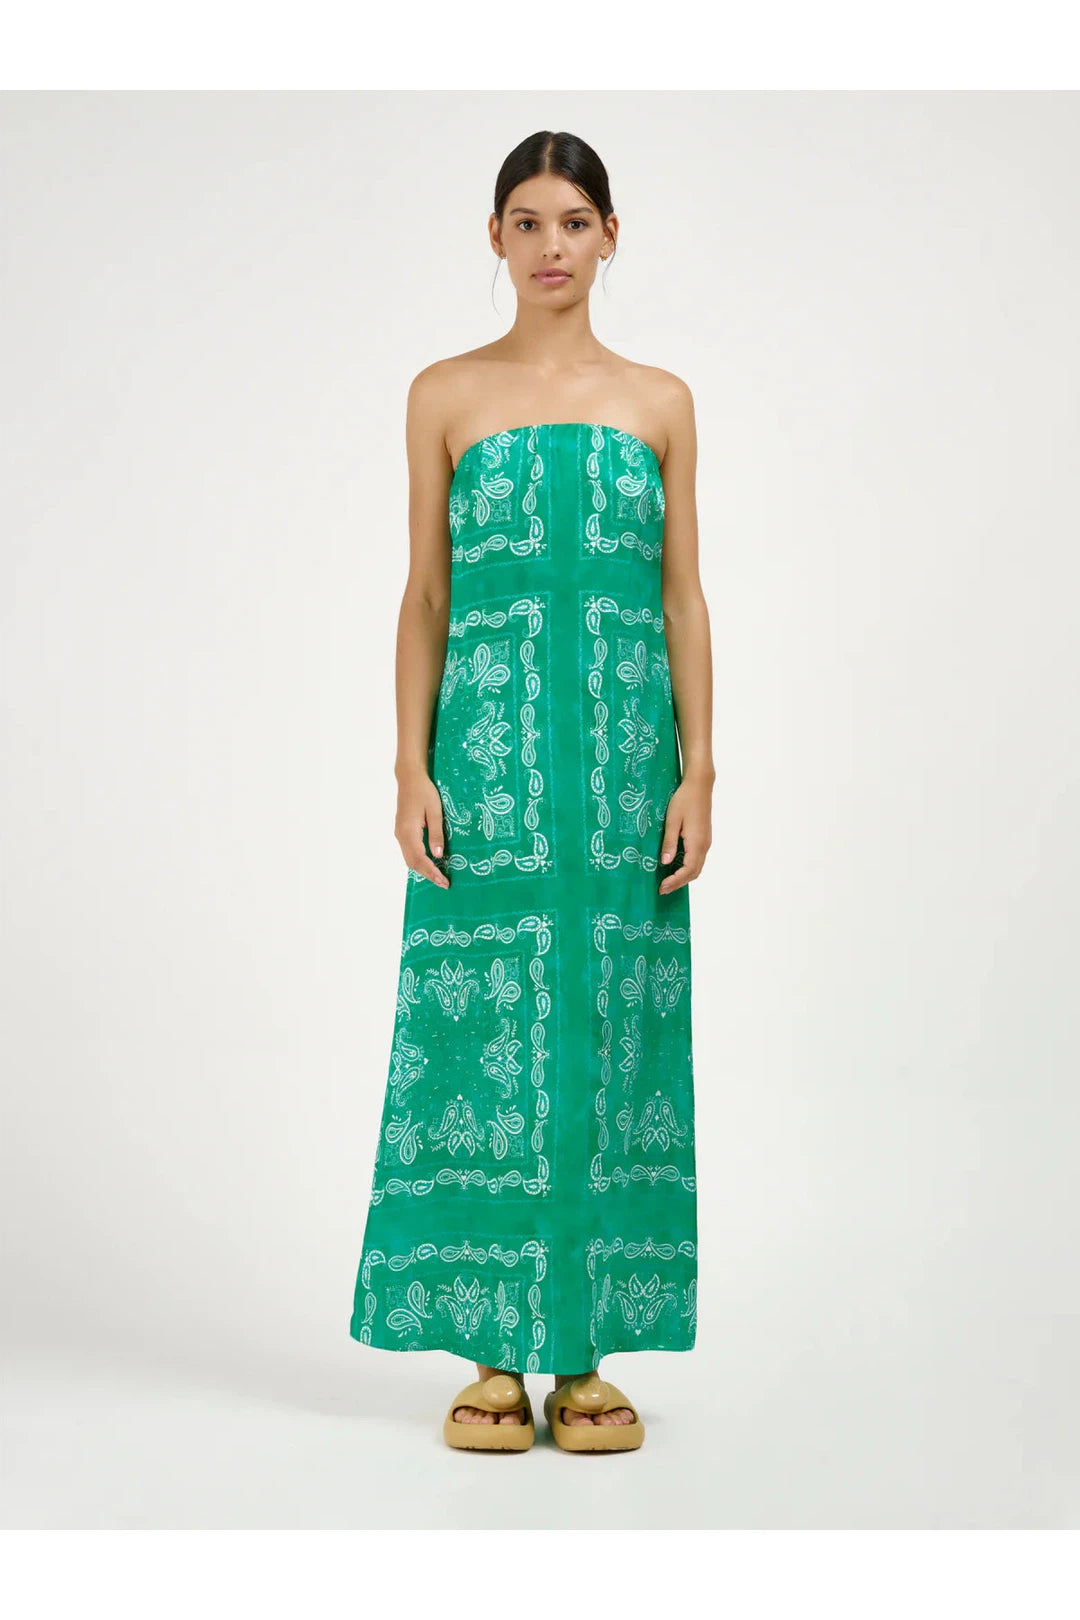 Amazon dress, Bandana